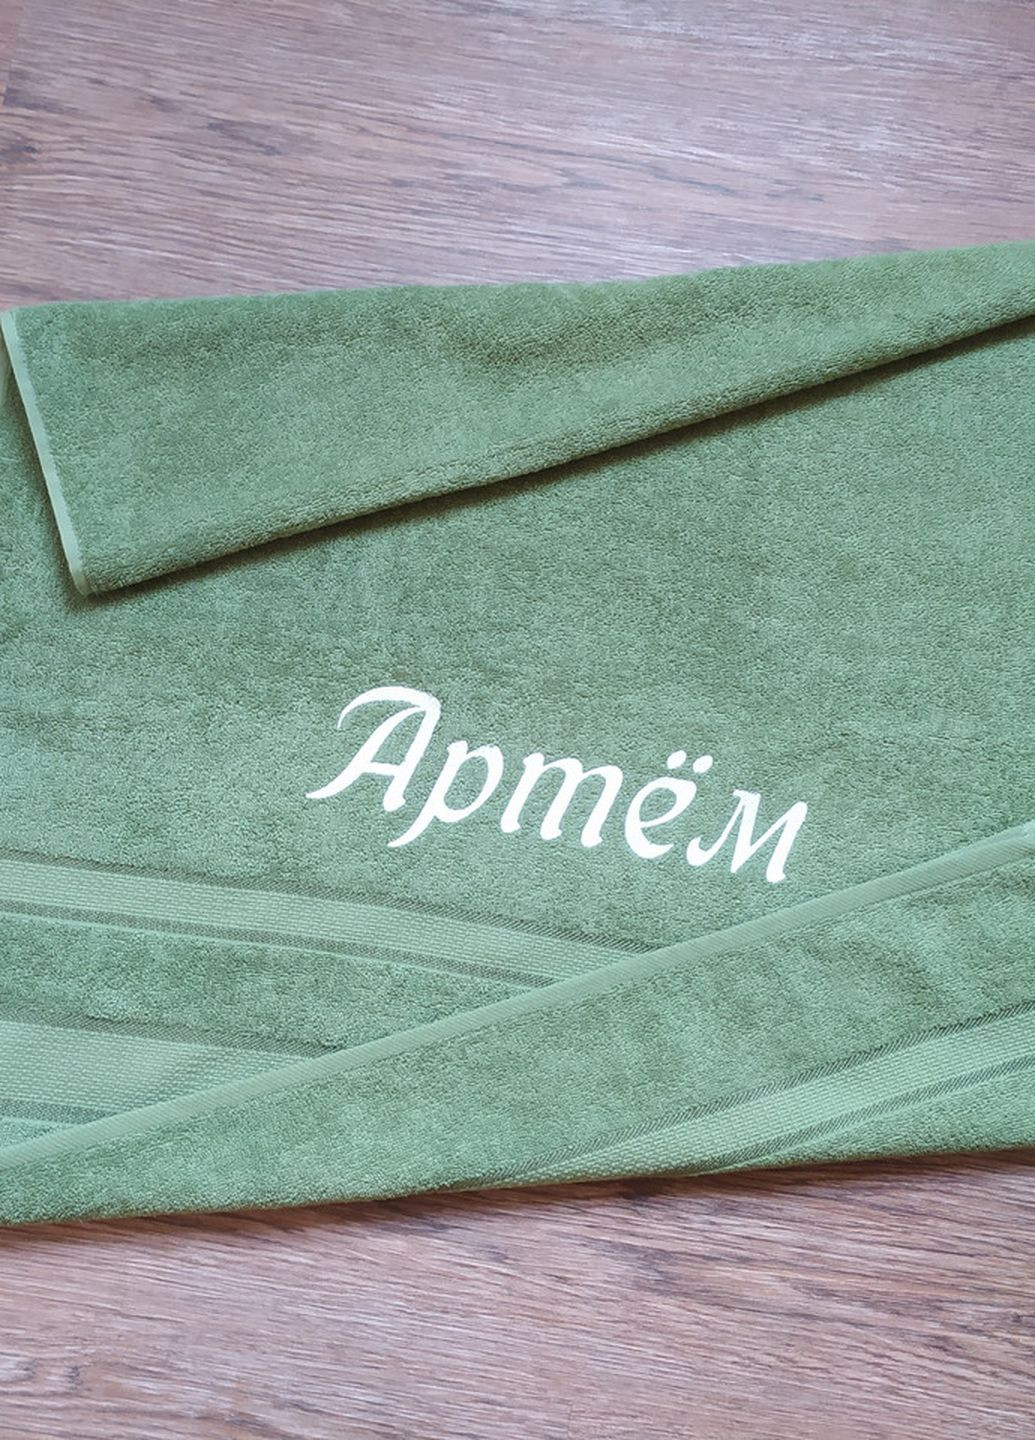 No Brand полотенце с именной вышивкой махровое банное 70*140 оливковый артем 00026 однотонный оливковый производство - Украина